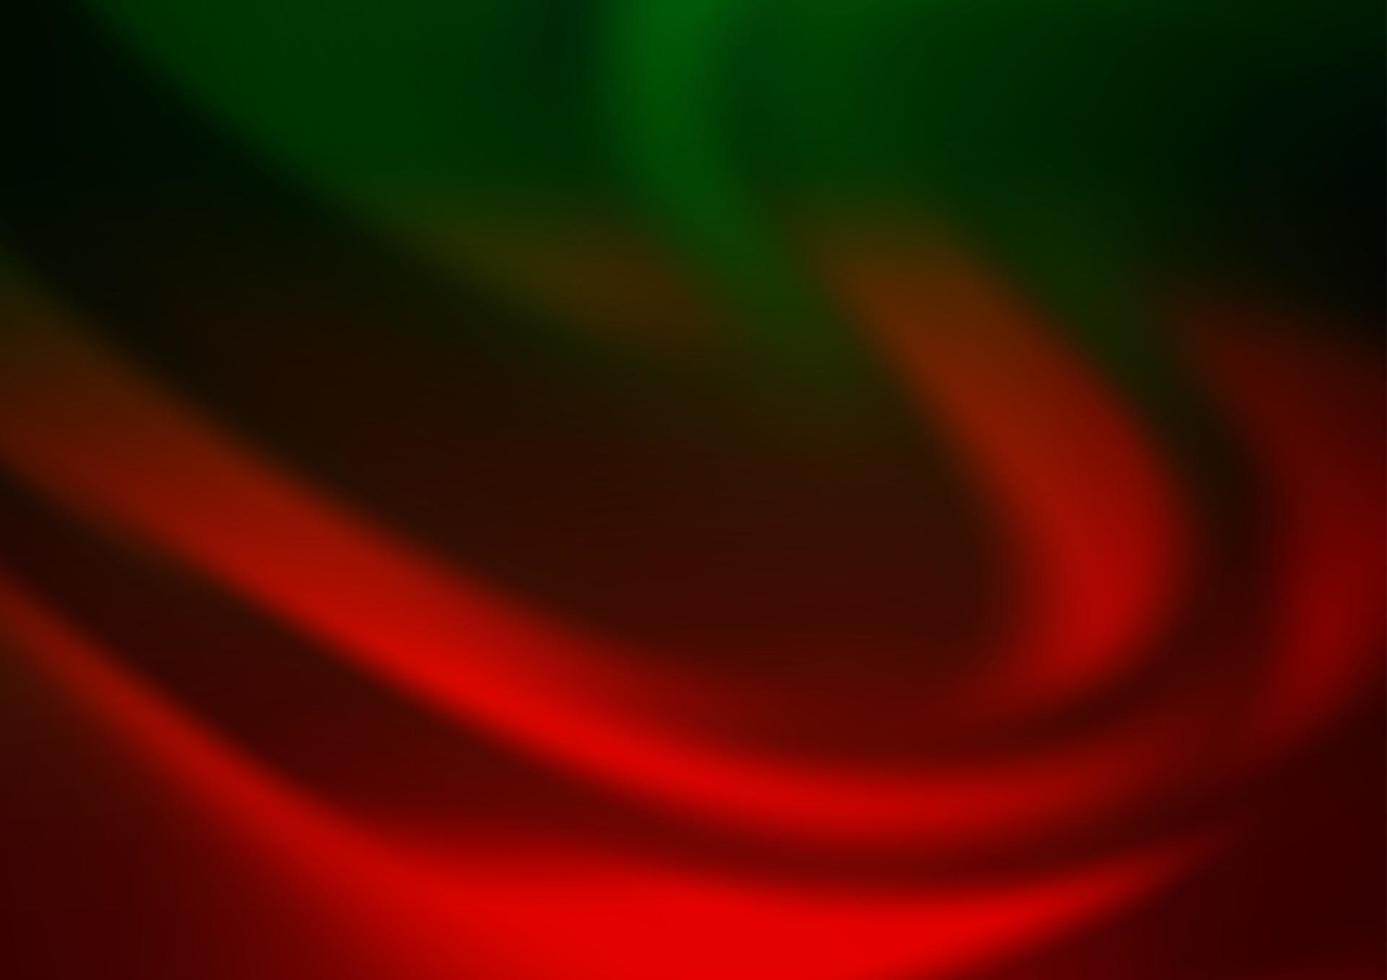 sfondo astratto vettoriale verde scuro, rosso.